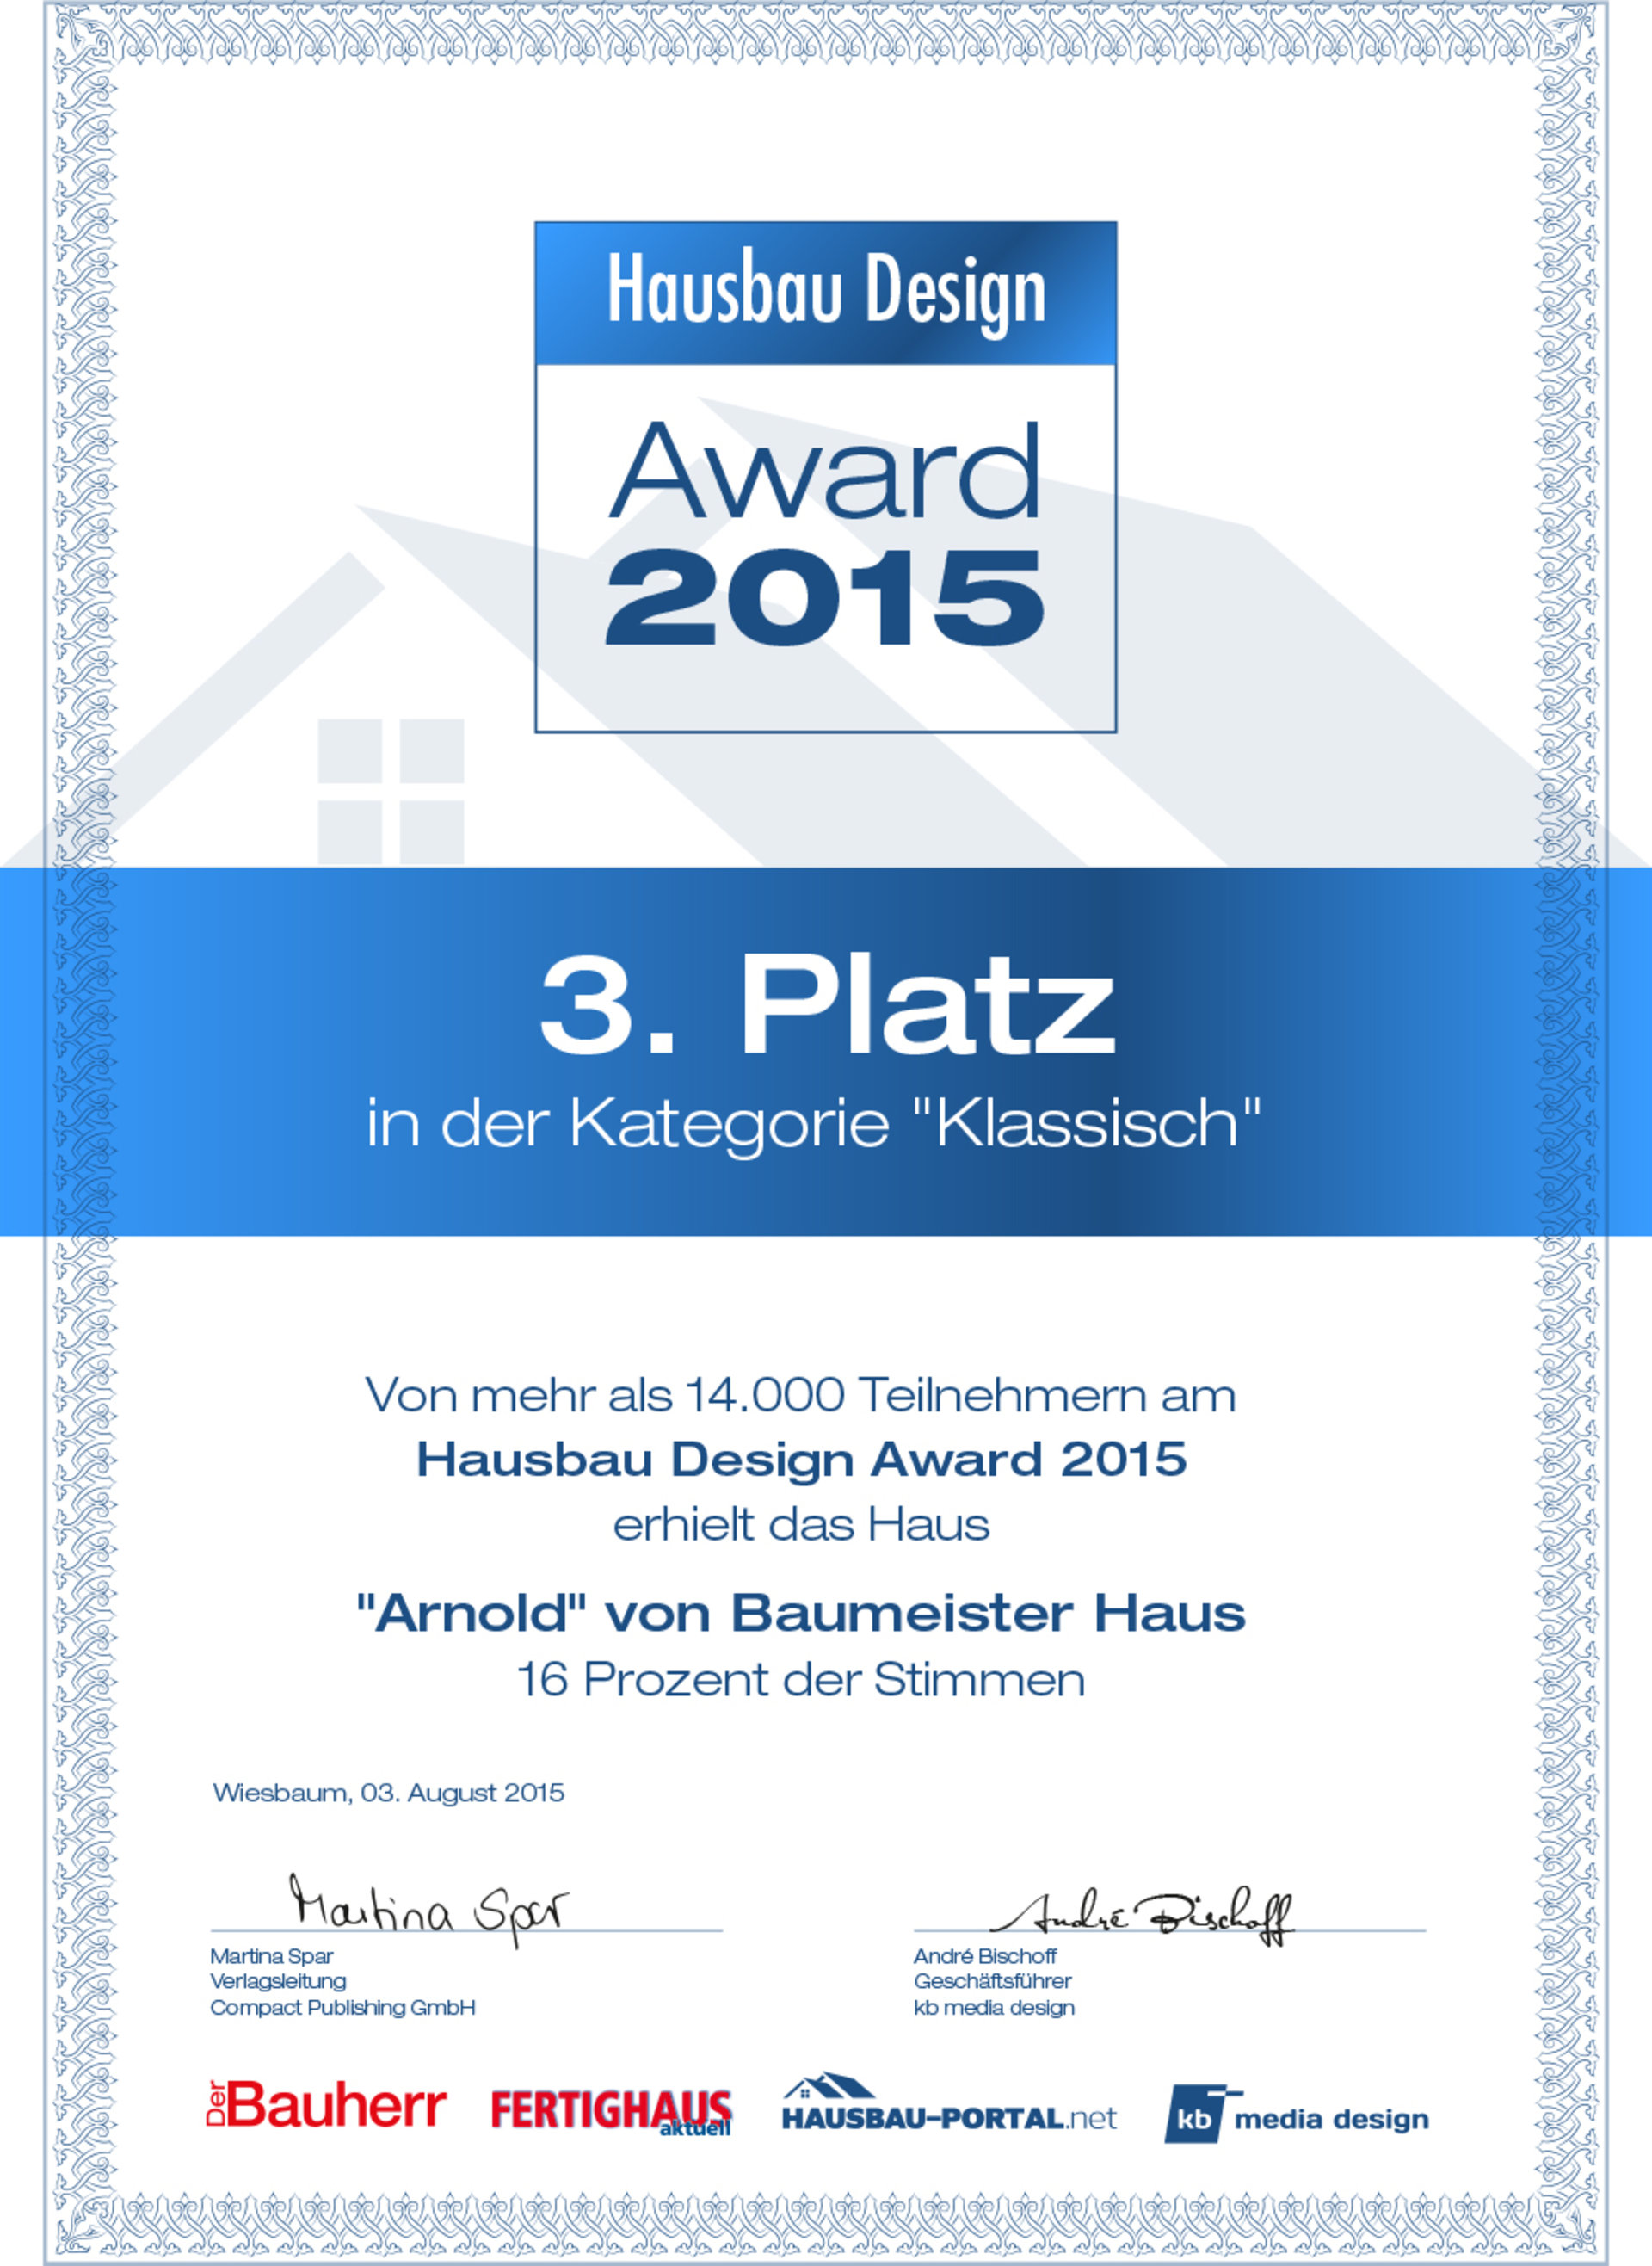 Urkunde des Hausbau Design Award 2015